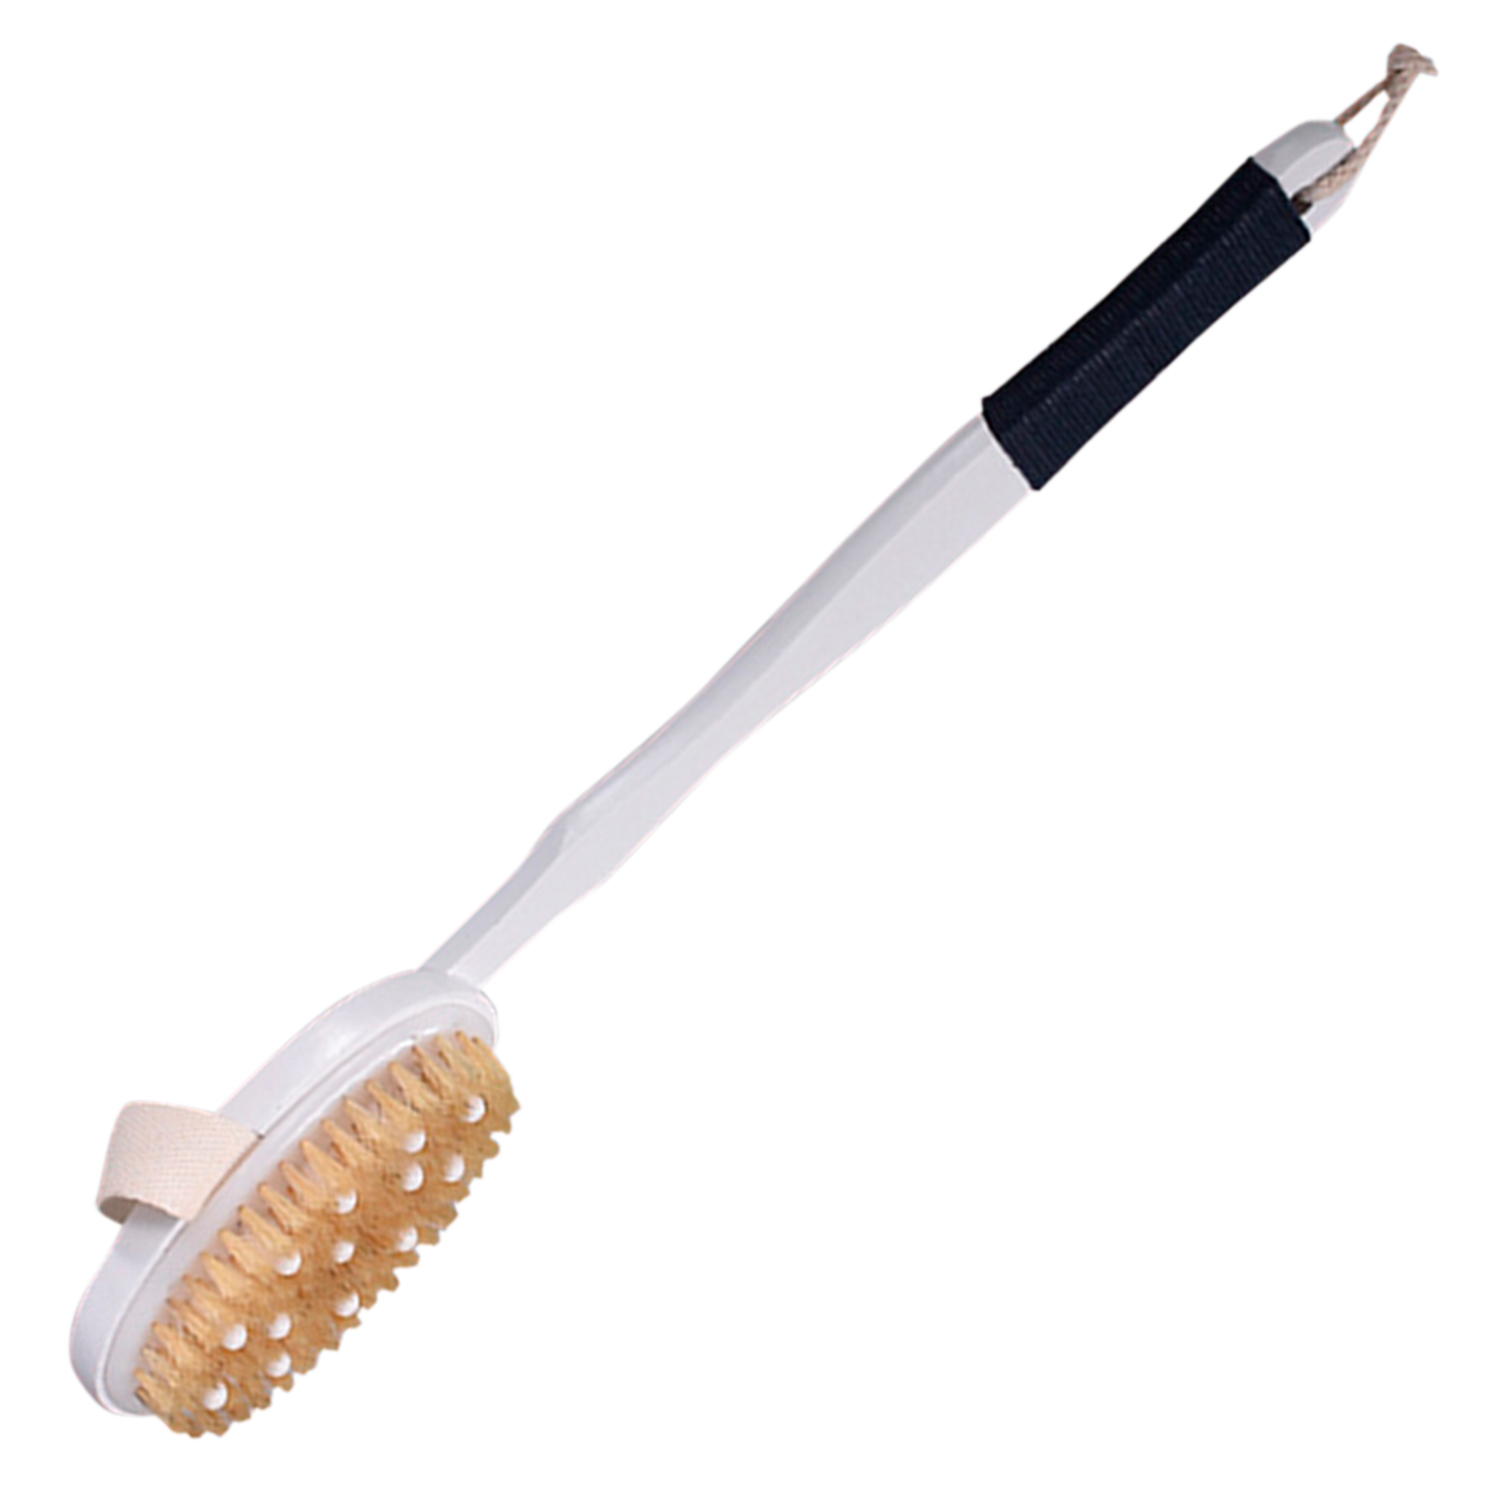 Массажер для бани VenusShape VS-BRS-13 grosheff щетка дубовая с ручкой и щетиной кабана для сухого массажа